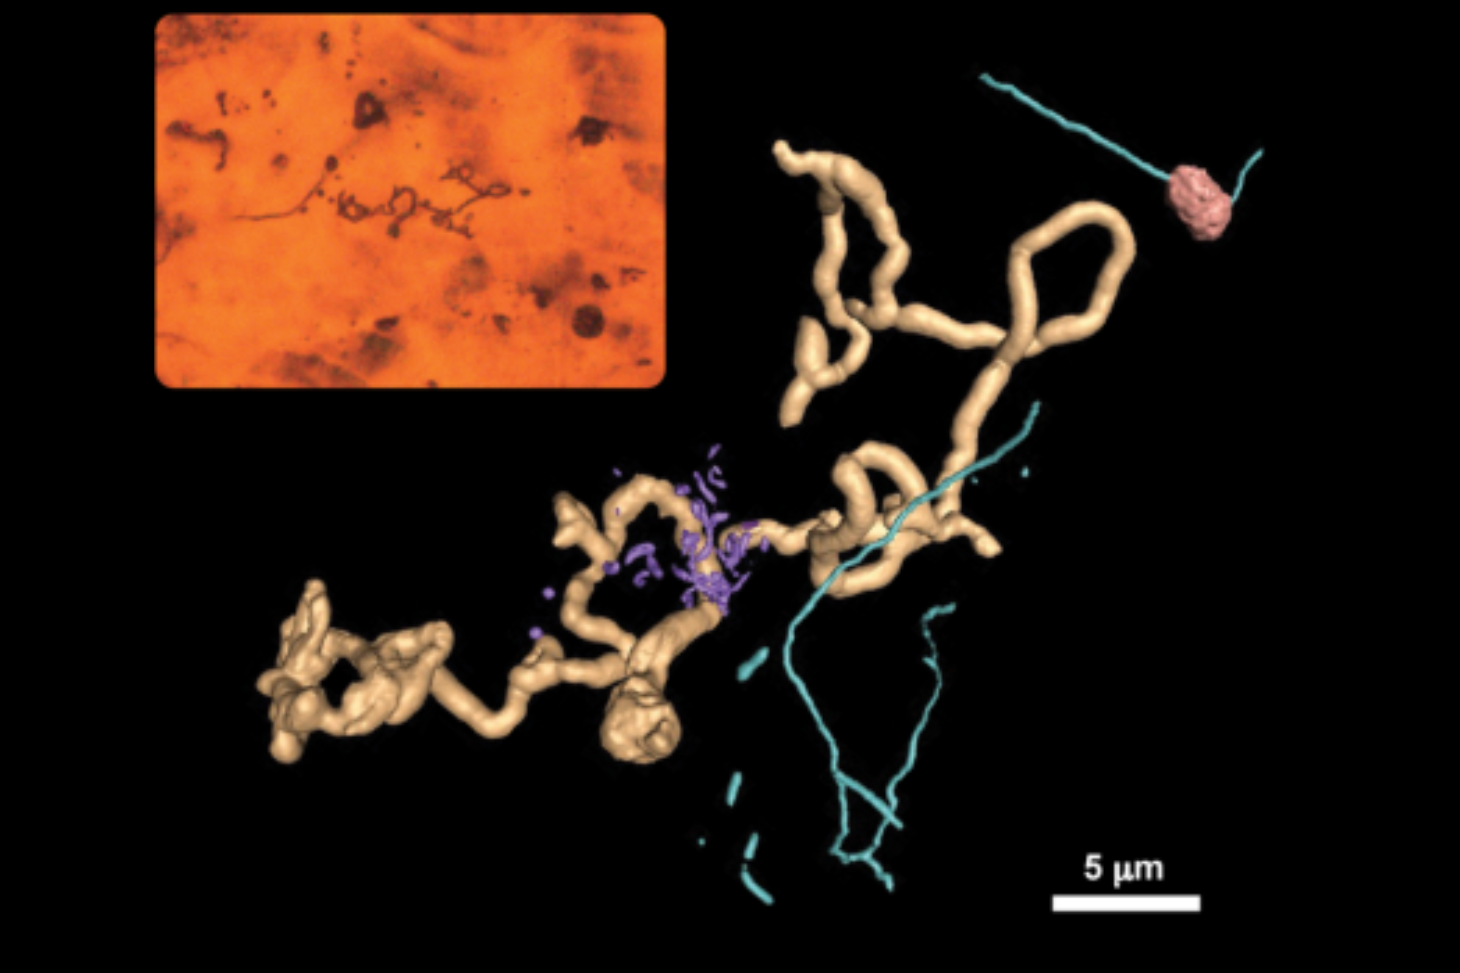 Figure : Fossiles de microorganismes de Rio Tinto, Espagne, observés par microscopie optique et vue correspondante de leur nanoimagerie 3D par laminographie à rayons X ptychographique (PyXL)